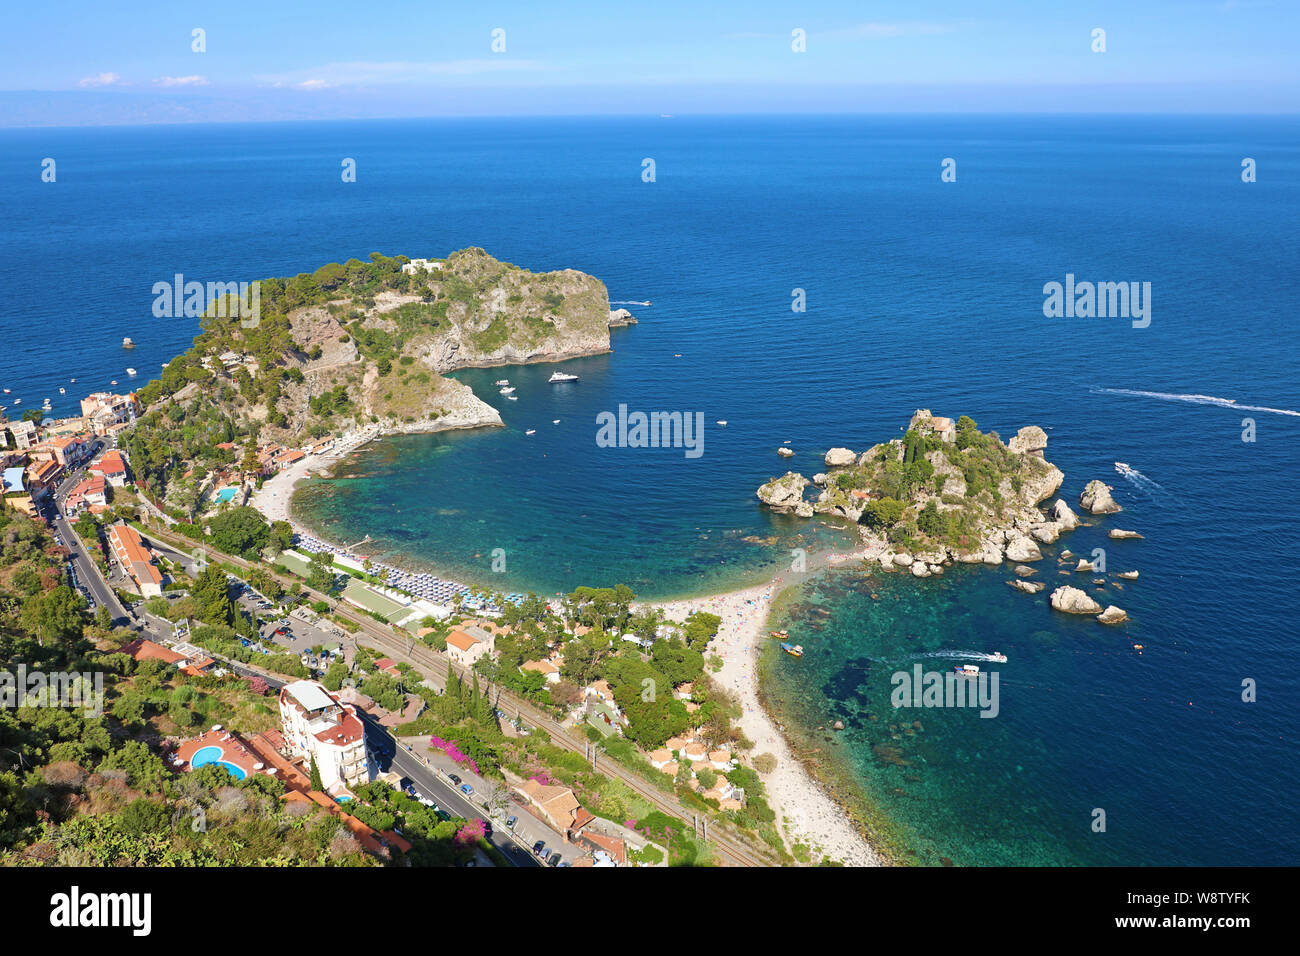 Bella vista aerea di Taormina, Italia. Seascape siciliano con Isola bella isola e spiaggia. Foto Stock